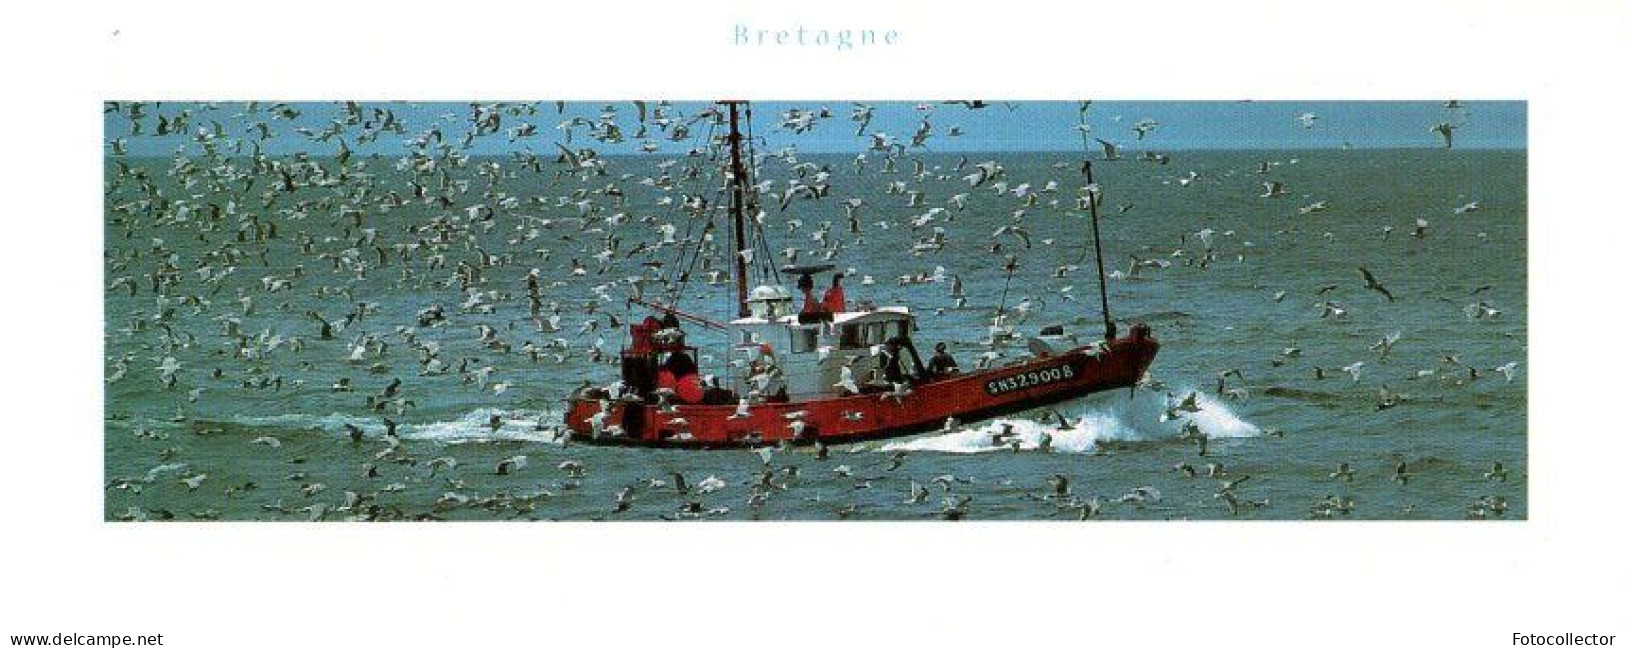 Retour De Pêche Du Chalutier Immatriculé SN329008 (Saint Nazaire 44) - Pêche